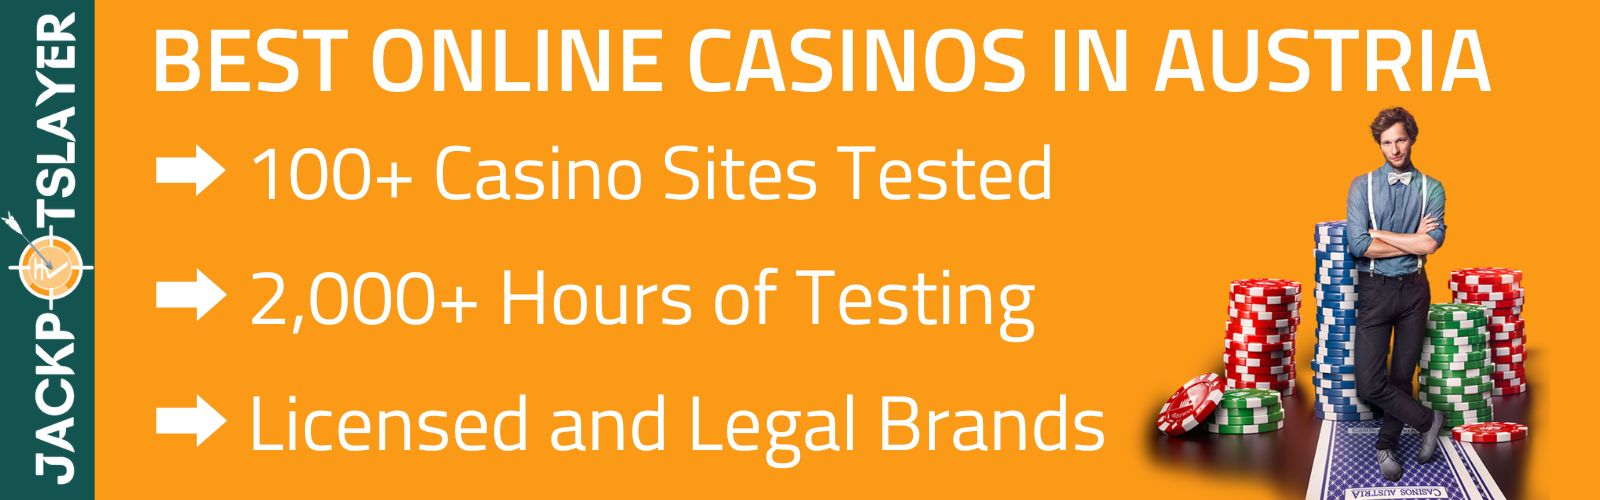 Verdreifachen Sie Ihre Ergebnisse bei Online Casino Spiele Österreich in der Hälfte der Zeit